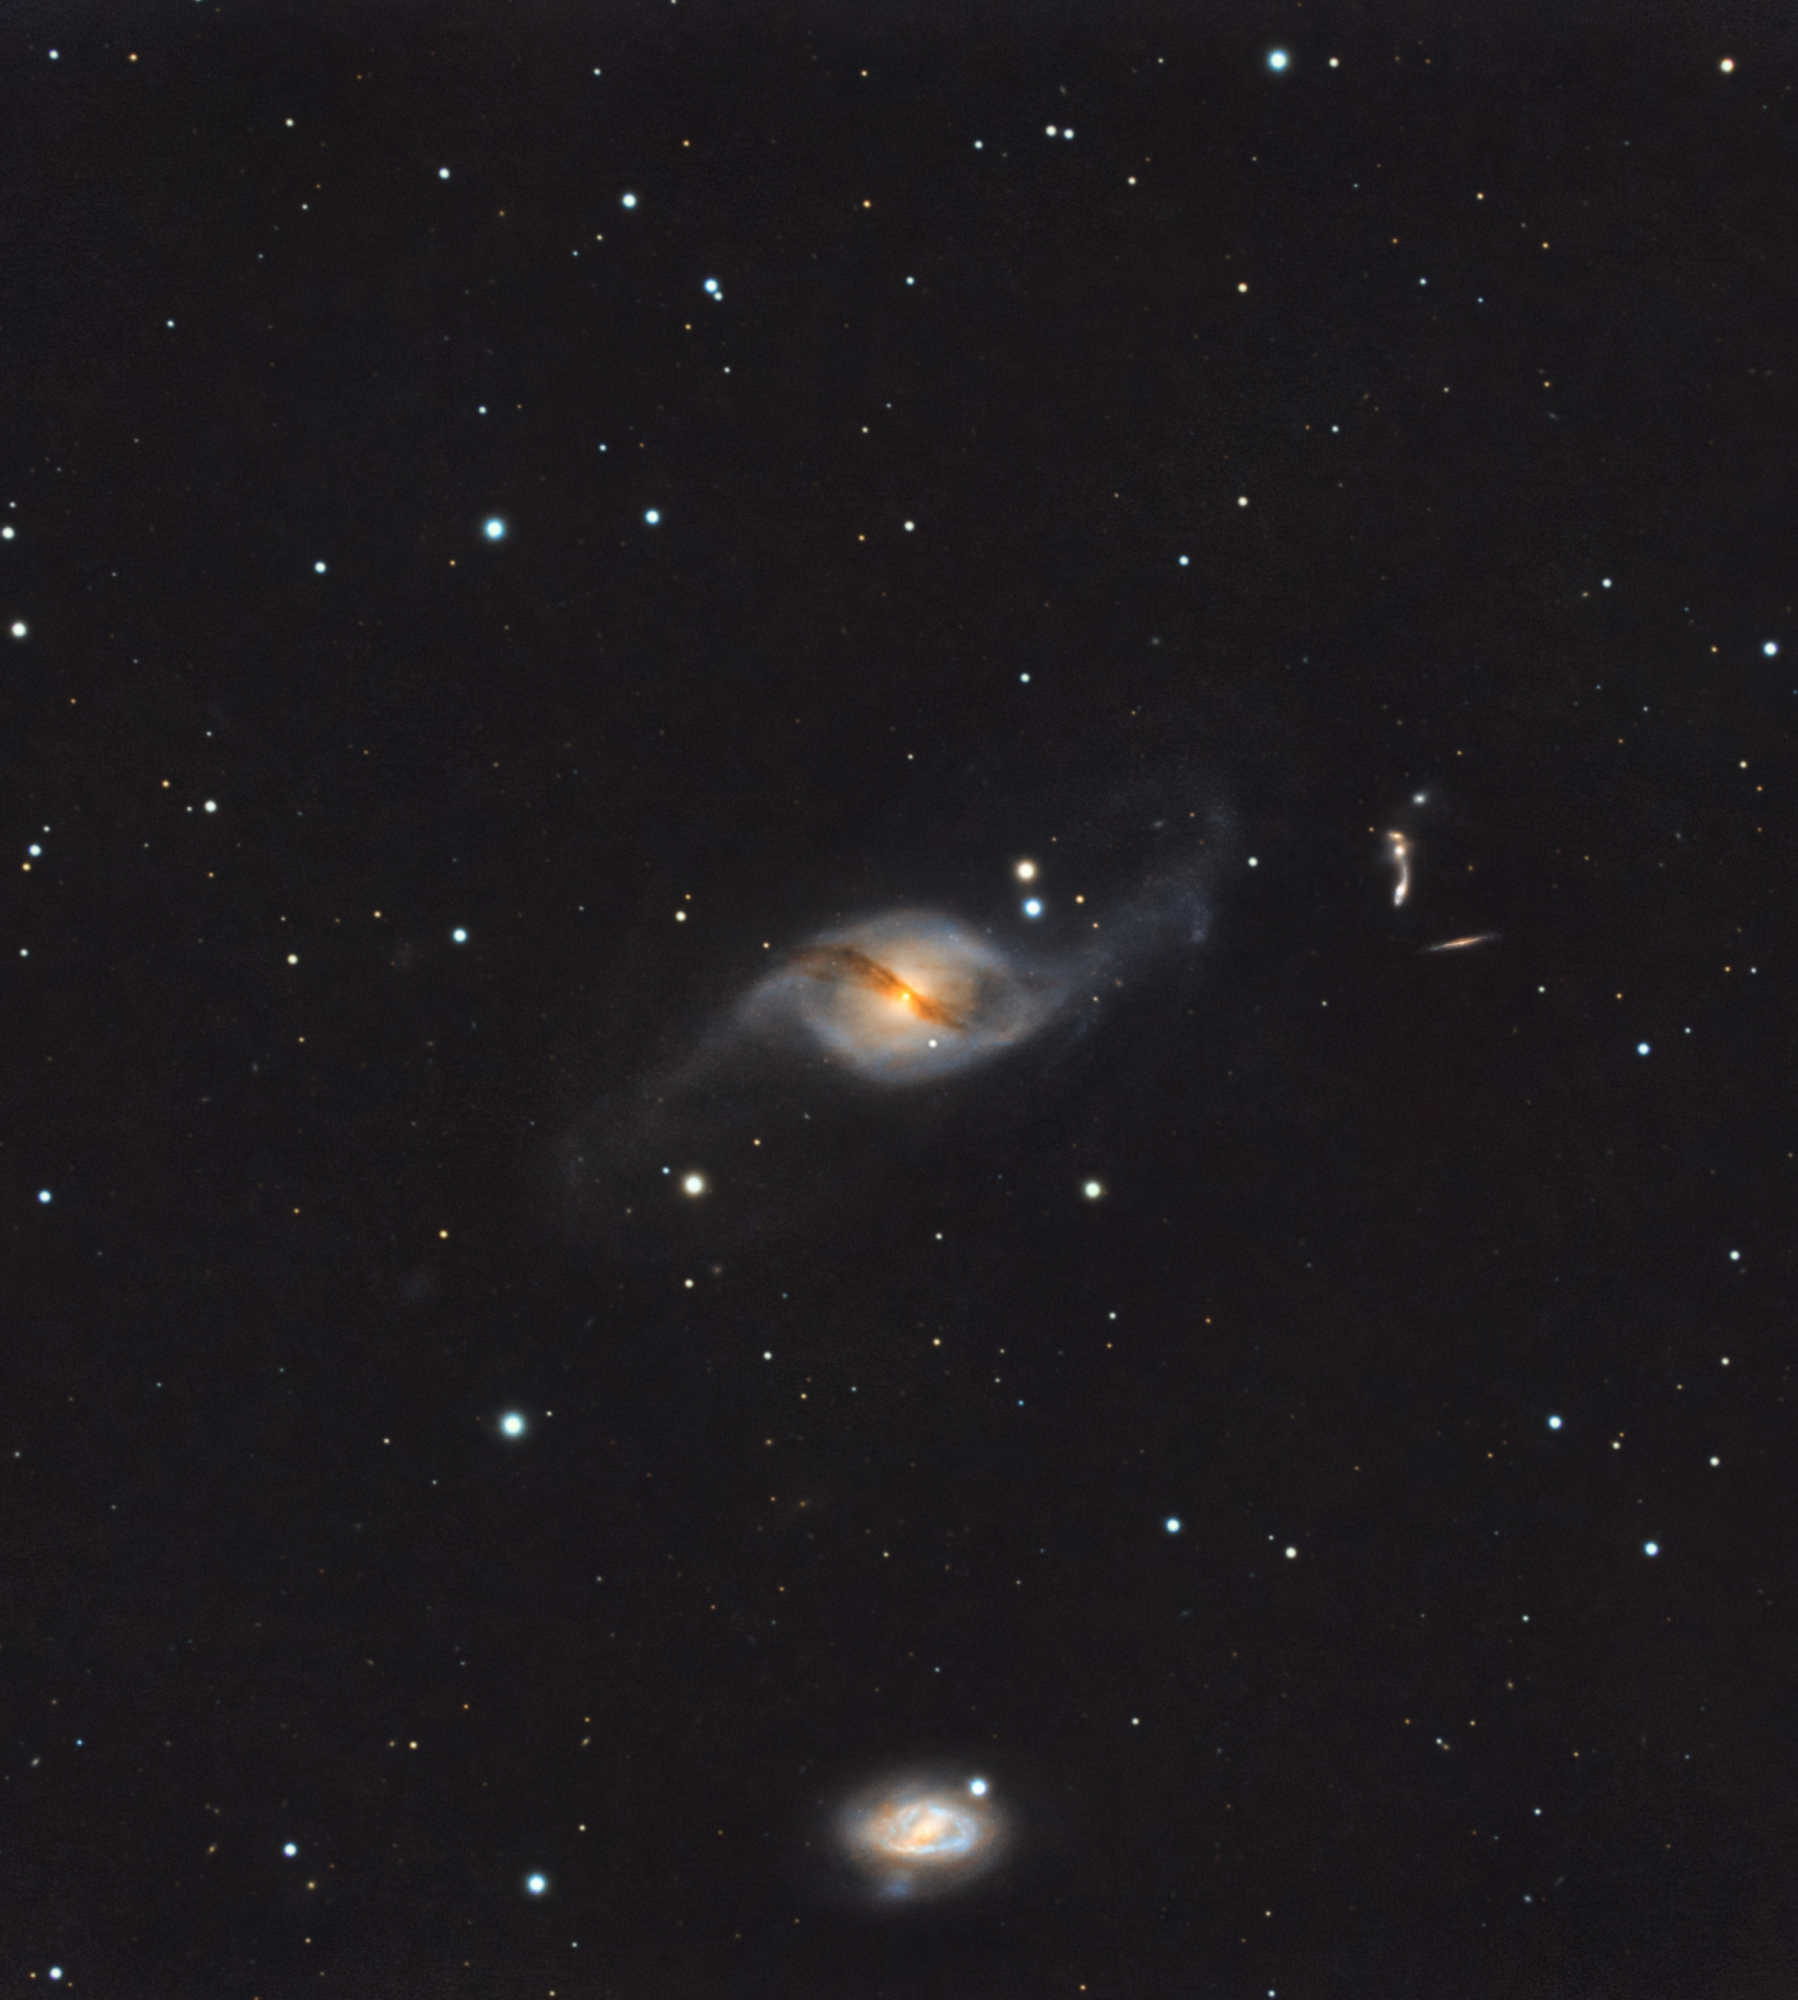 NGC_3718_2.thumb.jpg.899916d923a72c2f13170517927e3a2a.jpg